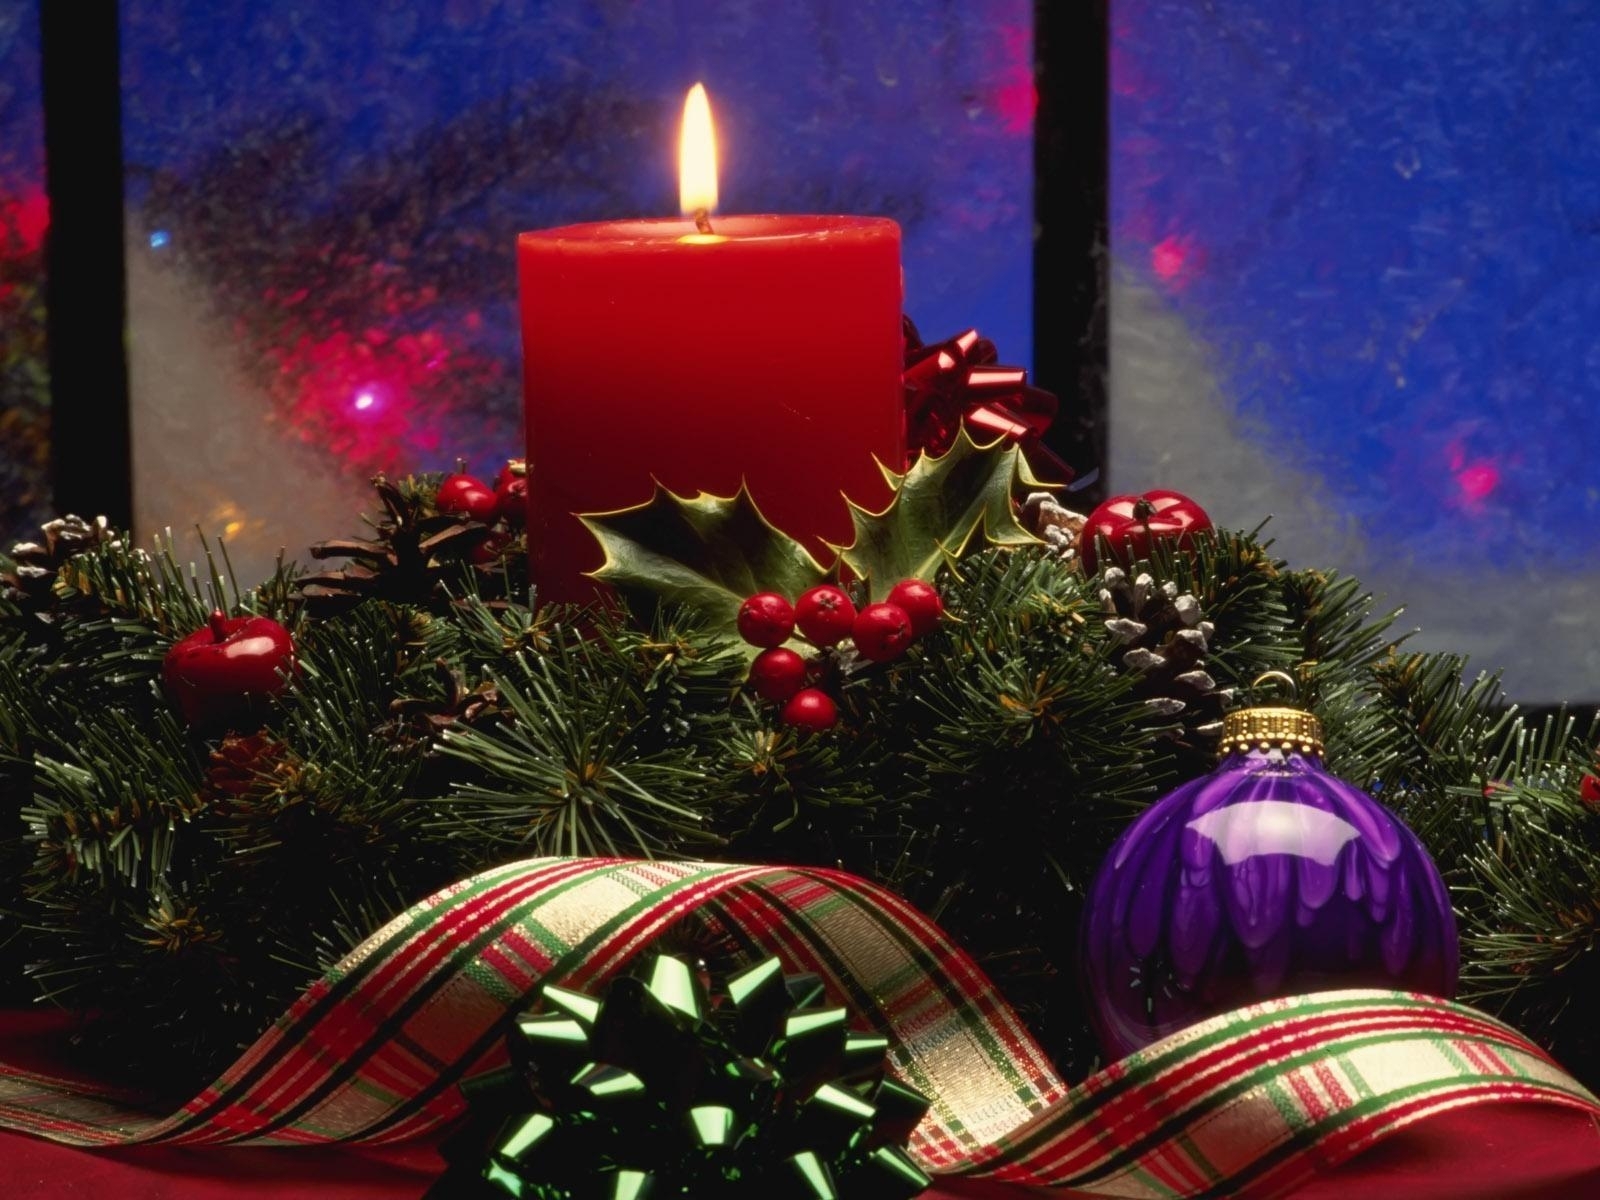 Скачать обои бесплатно Праздники, Рождество (Christmas Xmas), Свечи, Новый Год (New Year) картинка на рабочий стол ПК